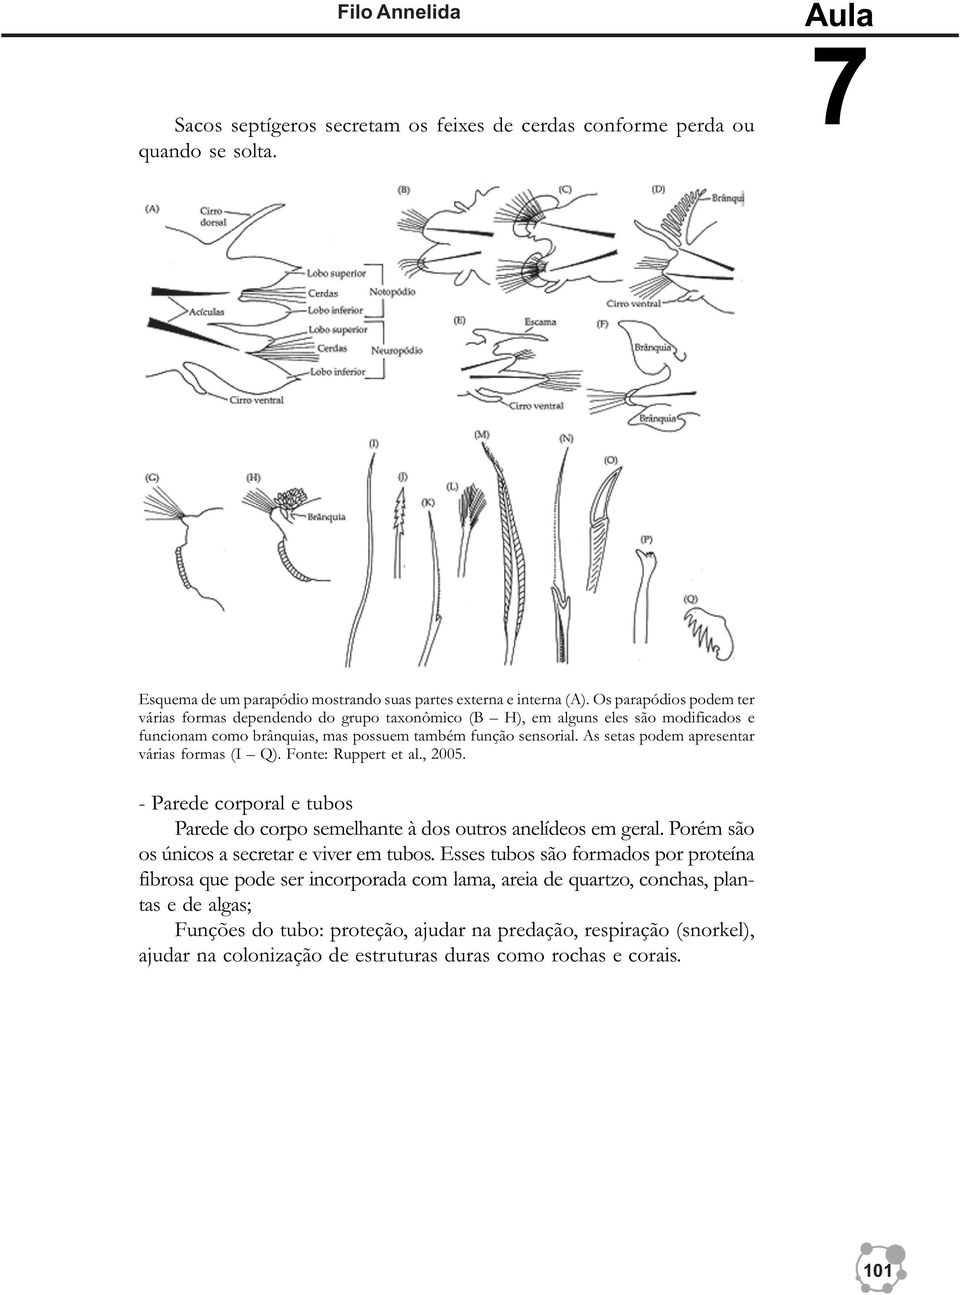 As setas podem apresentar várias formas (I Q). Fonte: Ruppert et al., 2005. - Parede corporal e tubos Parede do corpo semelhante à dos outros anelídeos em geral.